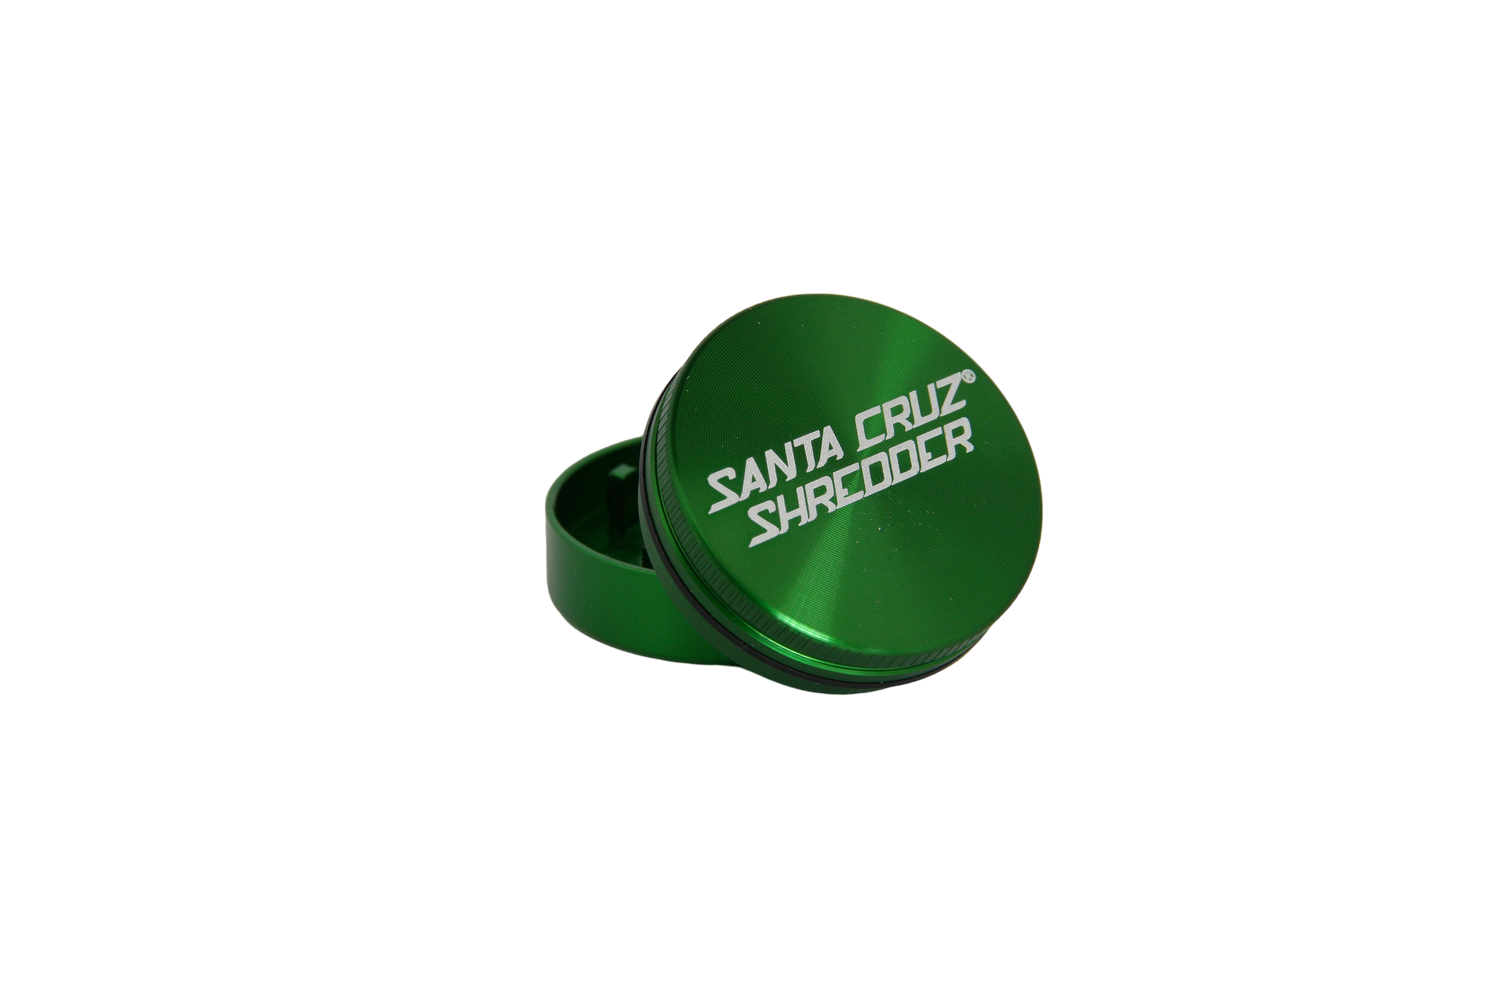 Santa Cruz Shredder - Small / 2 Piece